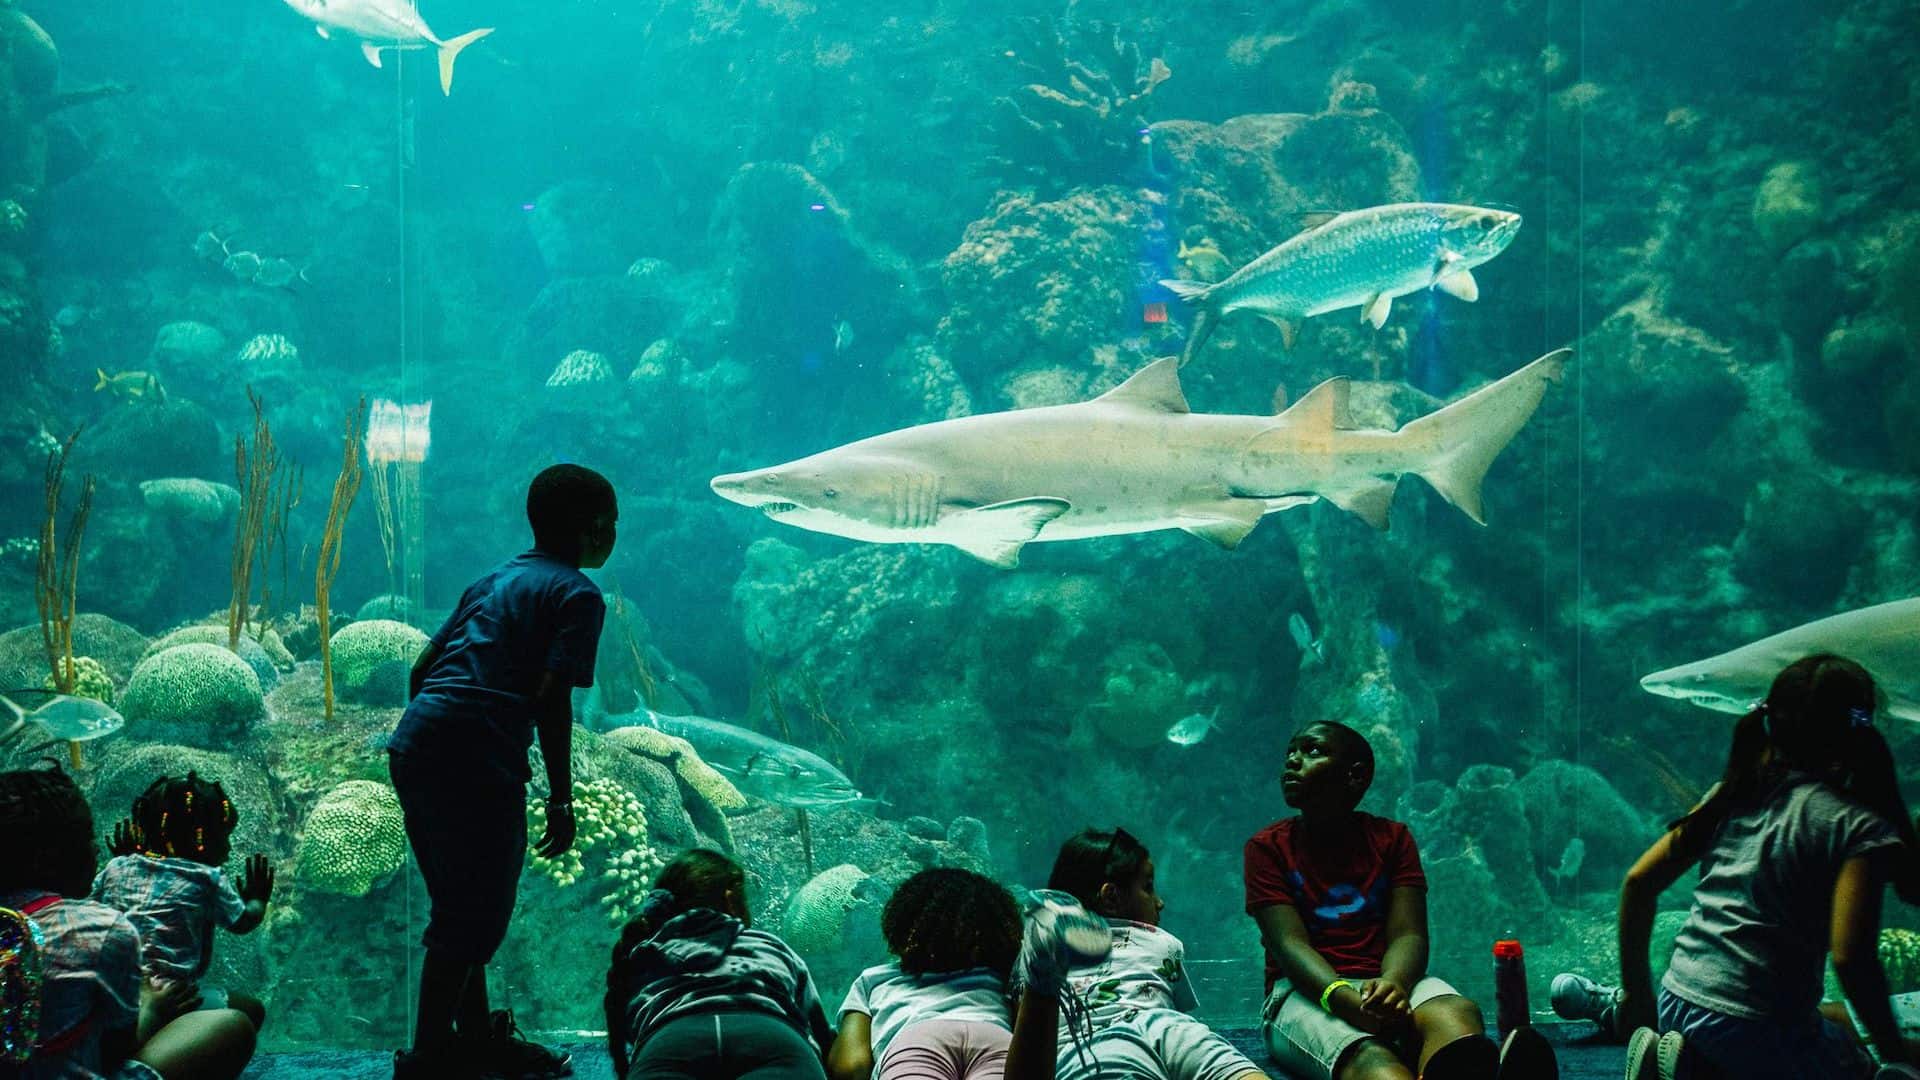 The Florida Aquarium in Tampa nominated for Best Aquarium in